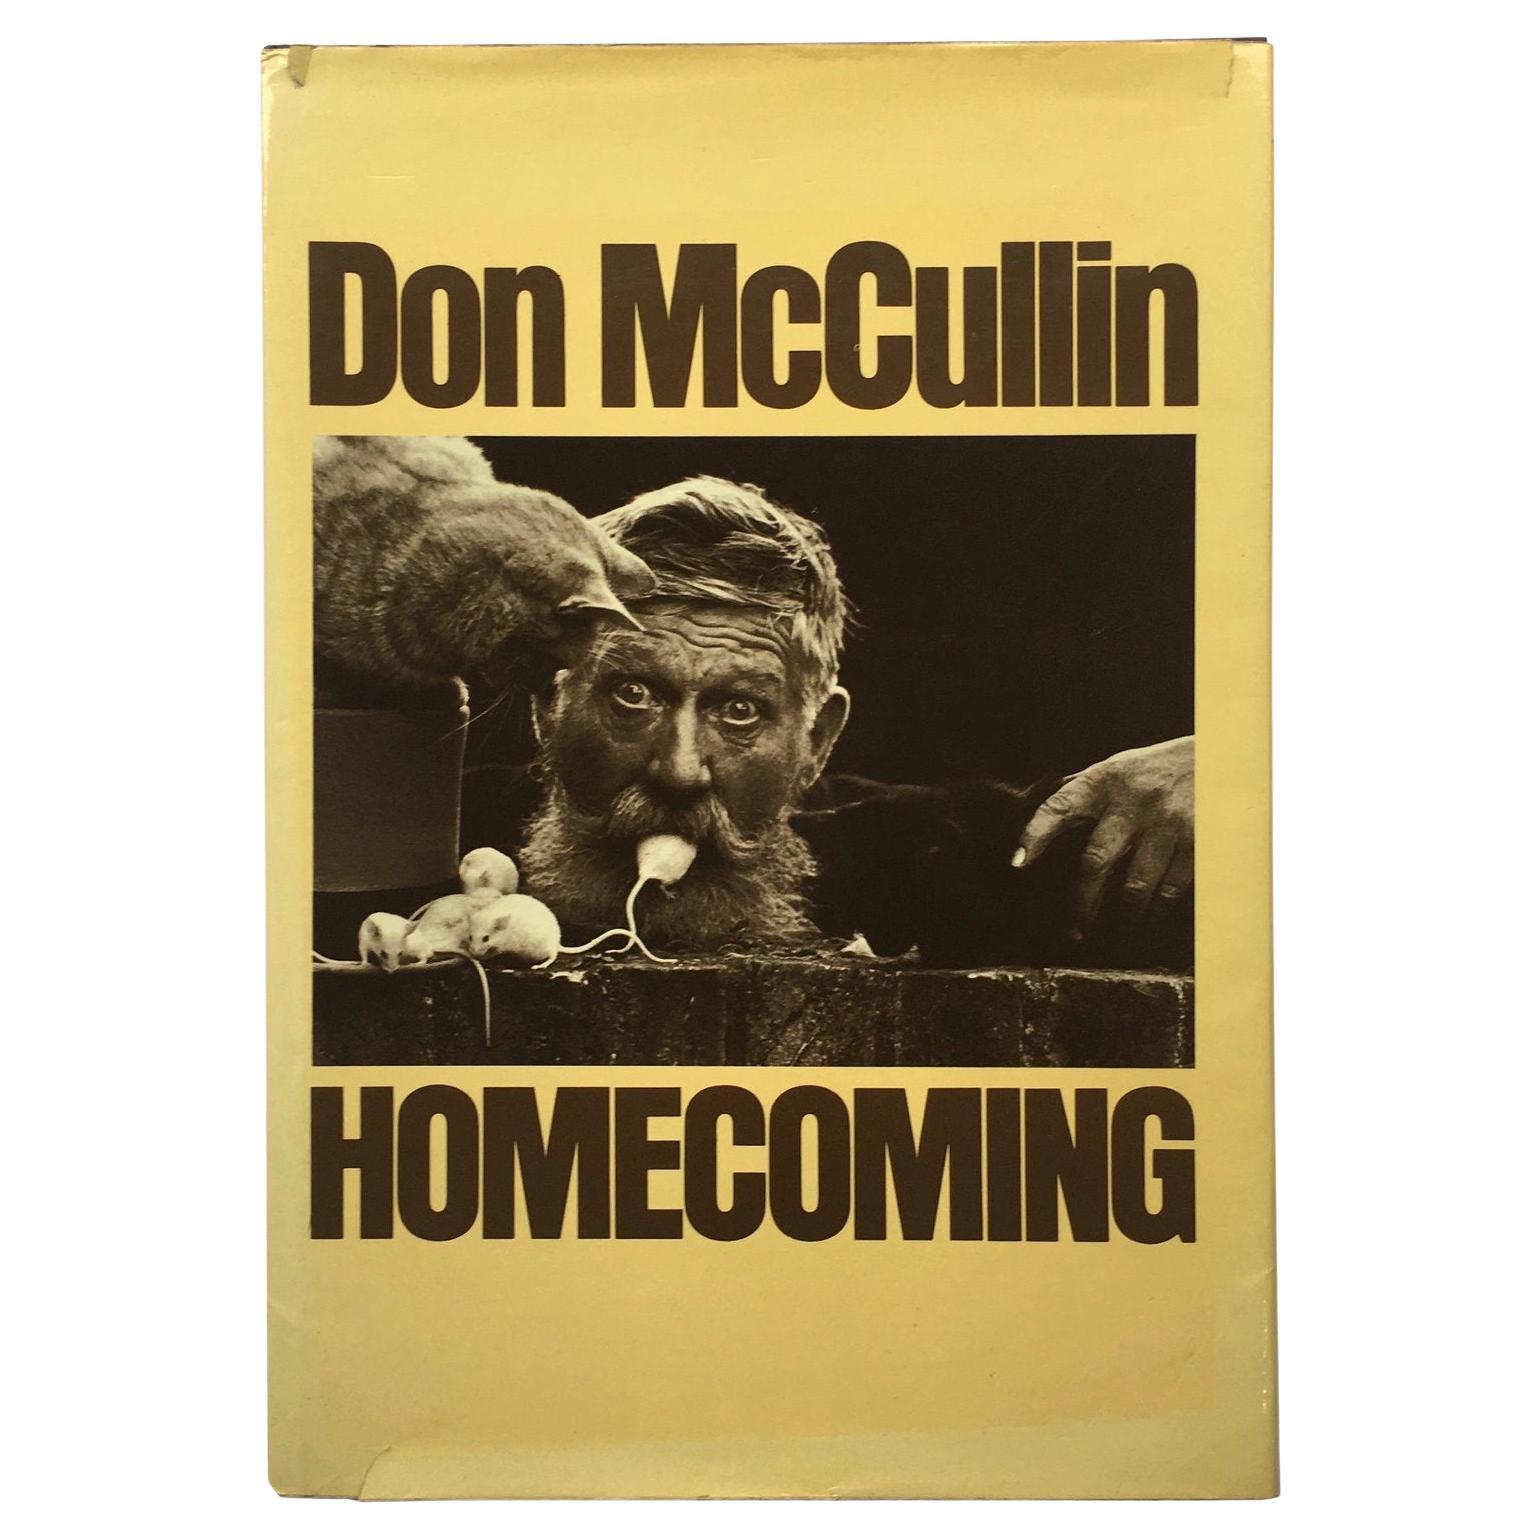 Homecoming, Don McCullin, 1st Edition, Macmillan, 1979